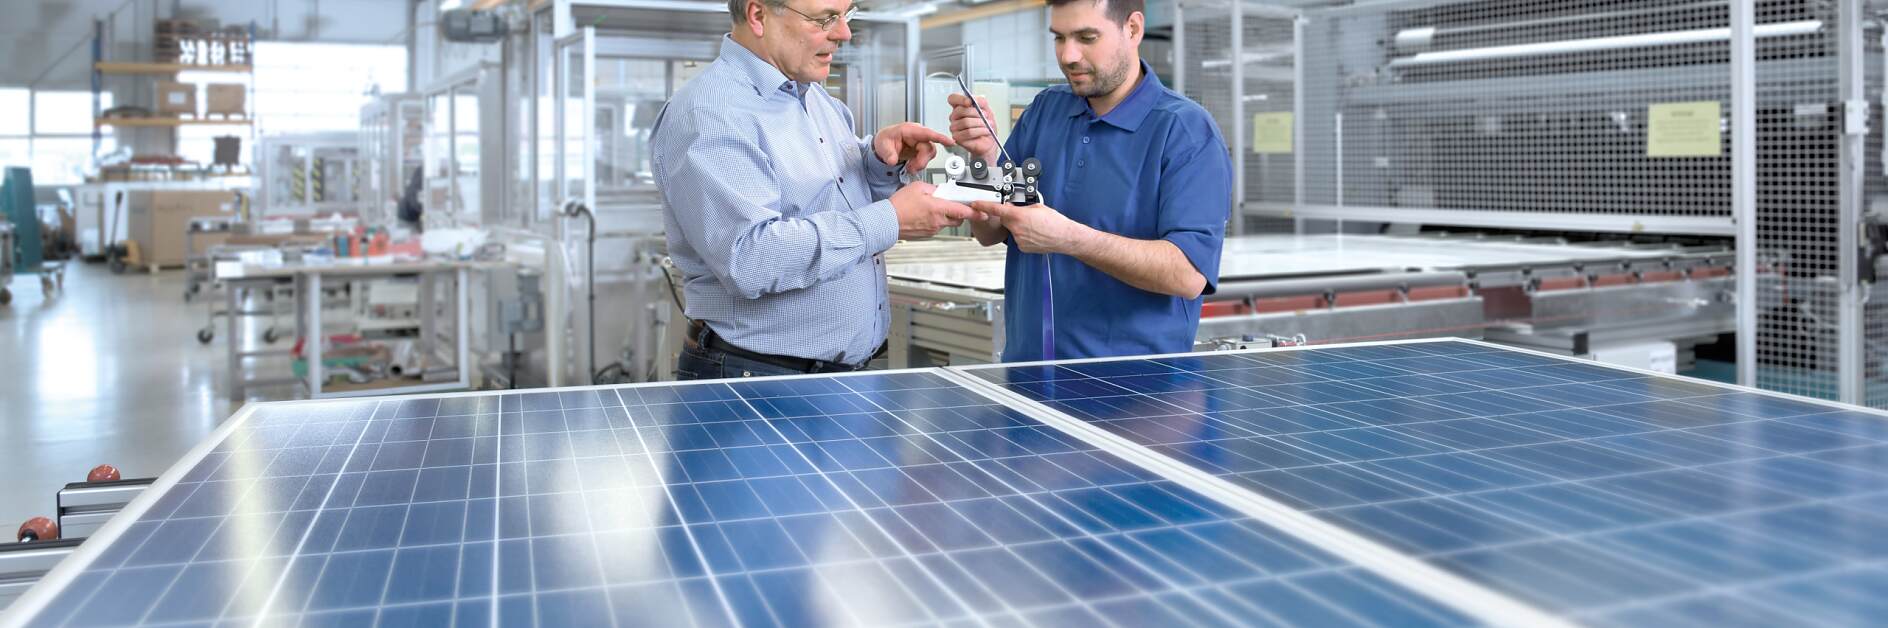 Soluciones de cinta tesa para la industria fotovoltaica